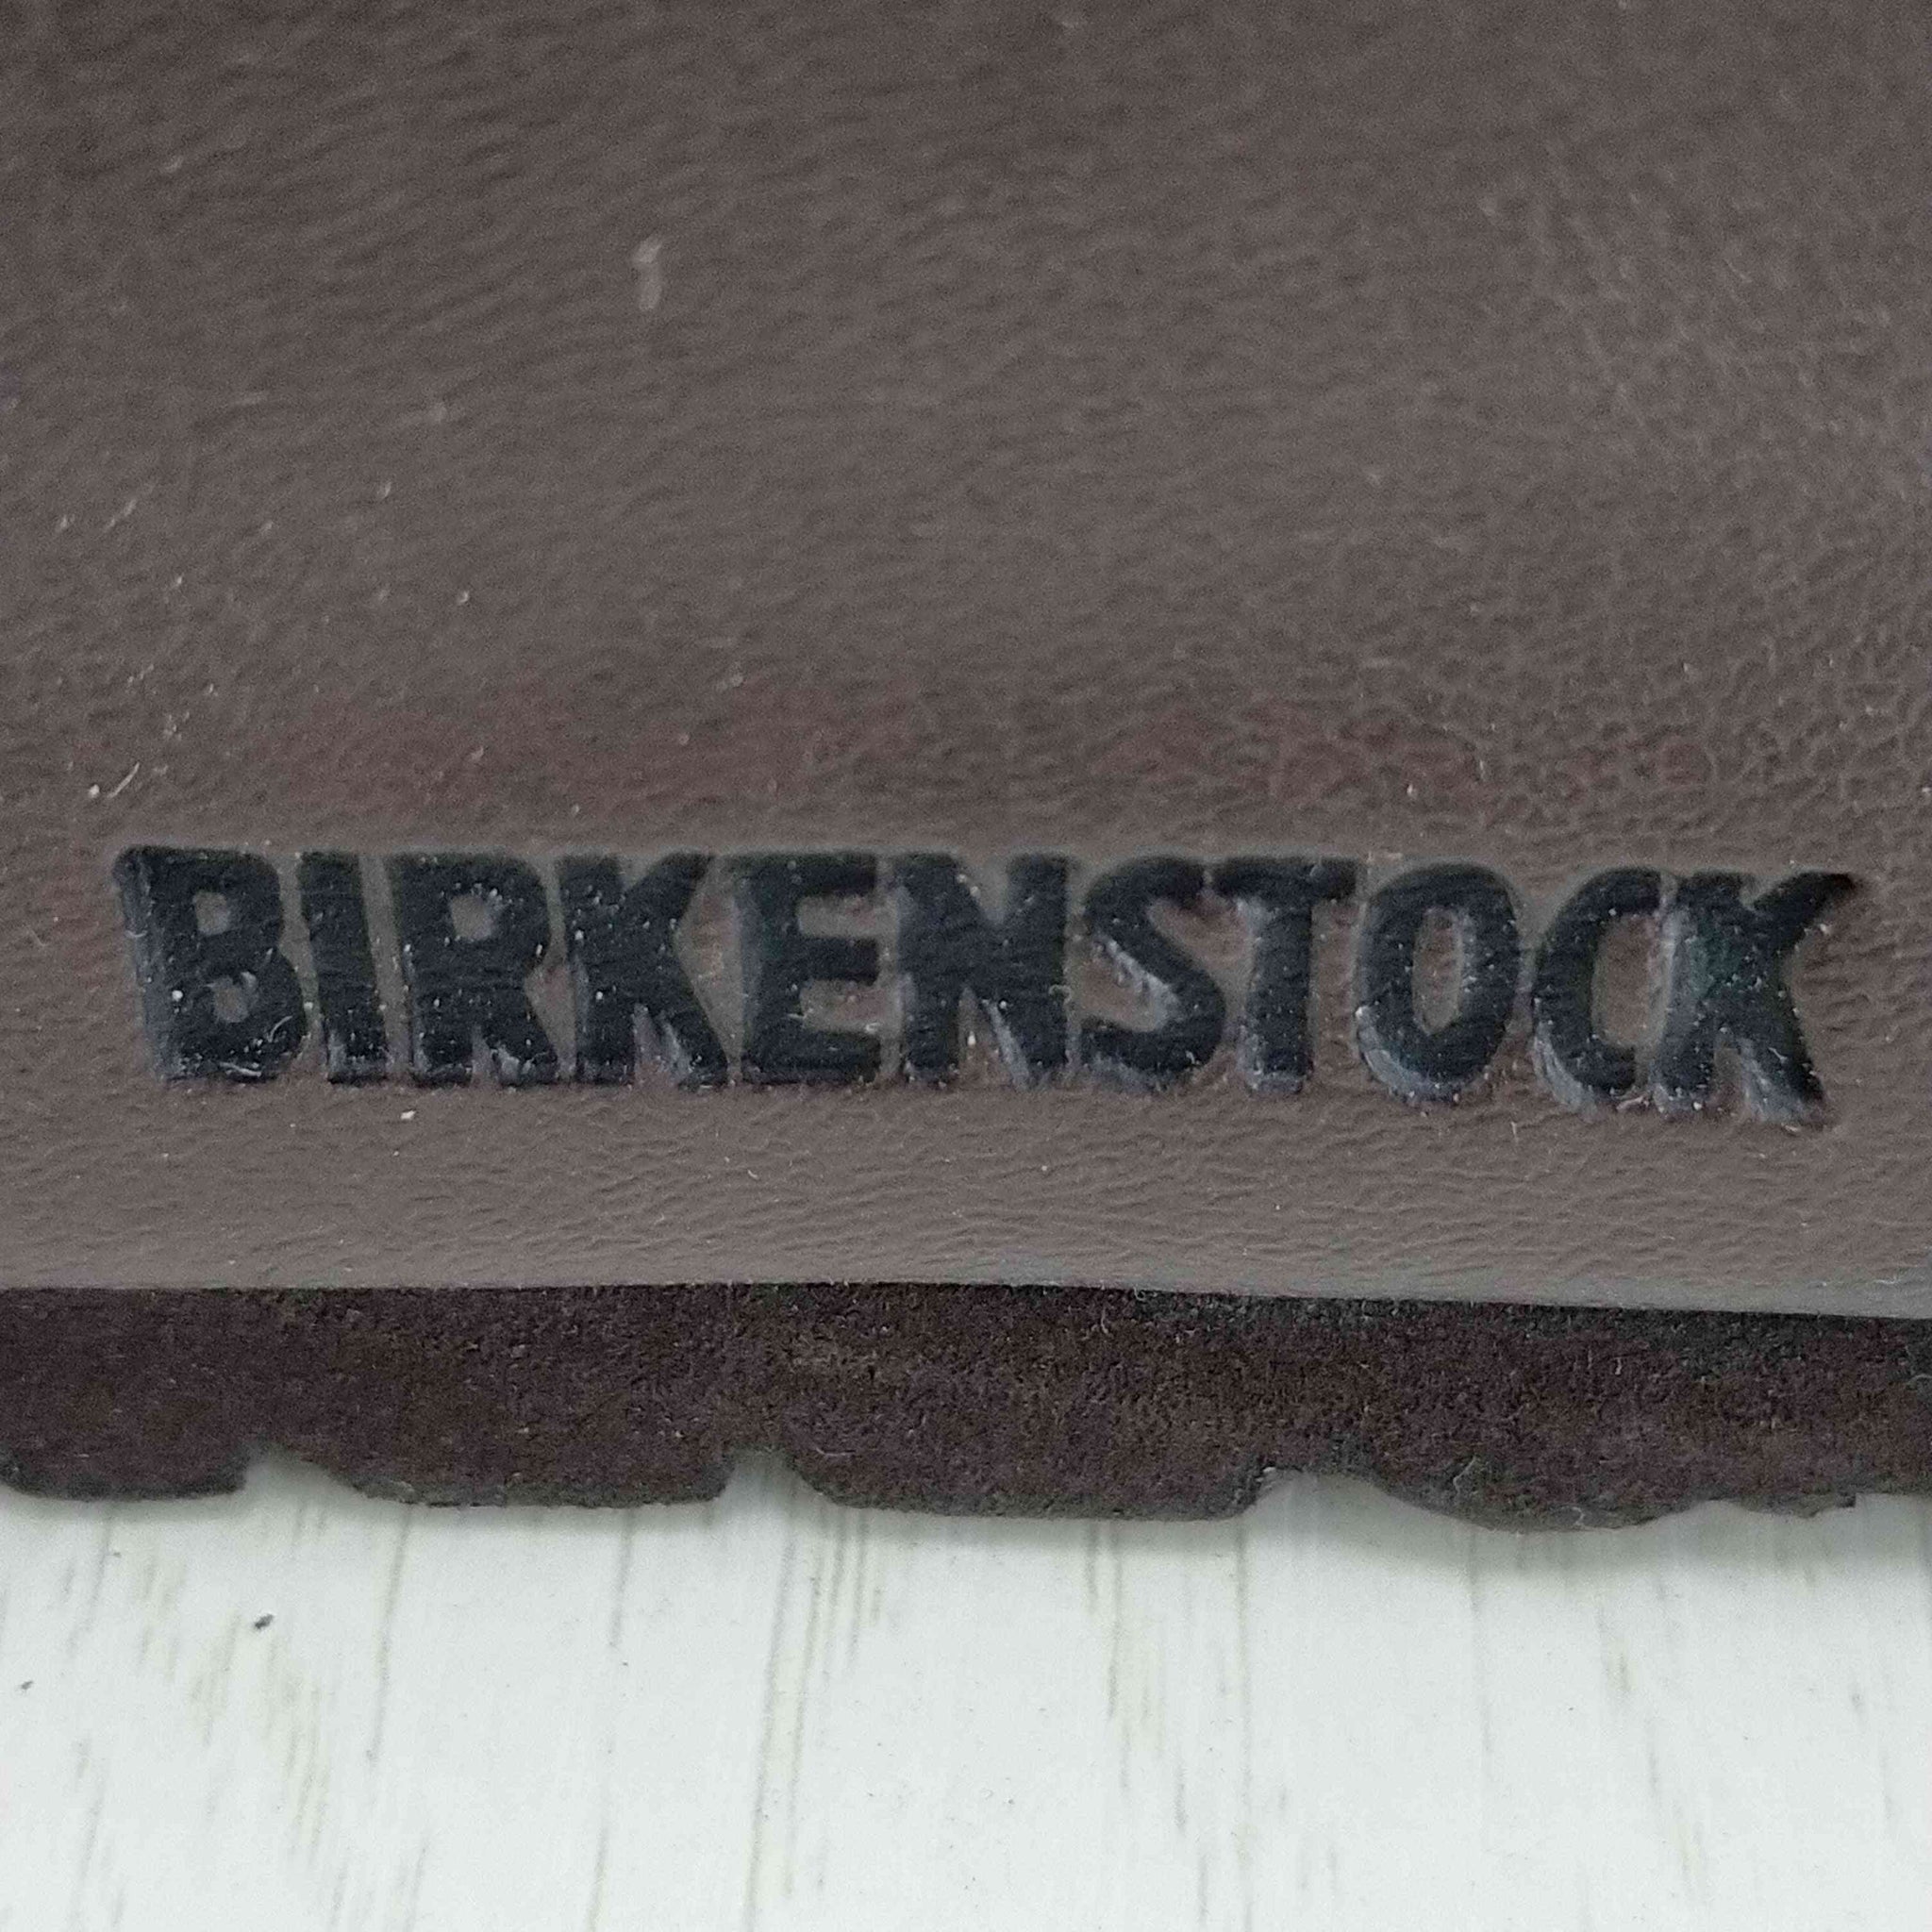 BIRKENSTOCK(ビルケンシュトック)MIRANO レザーサンダル